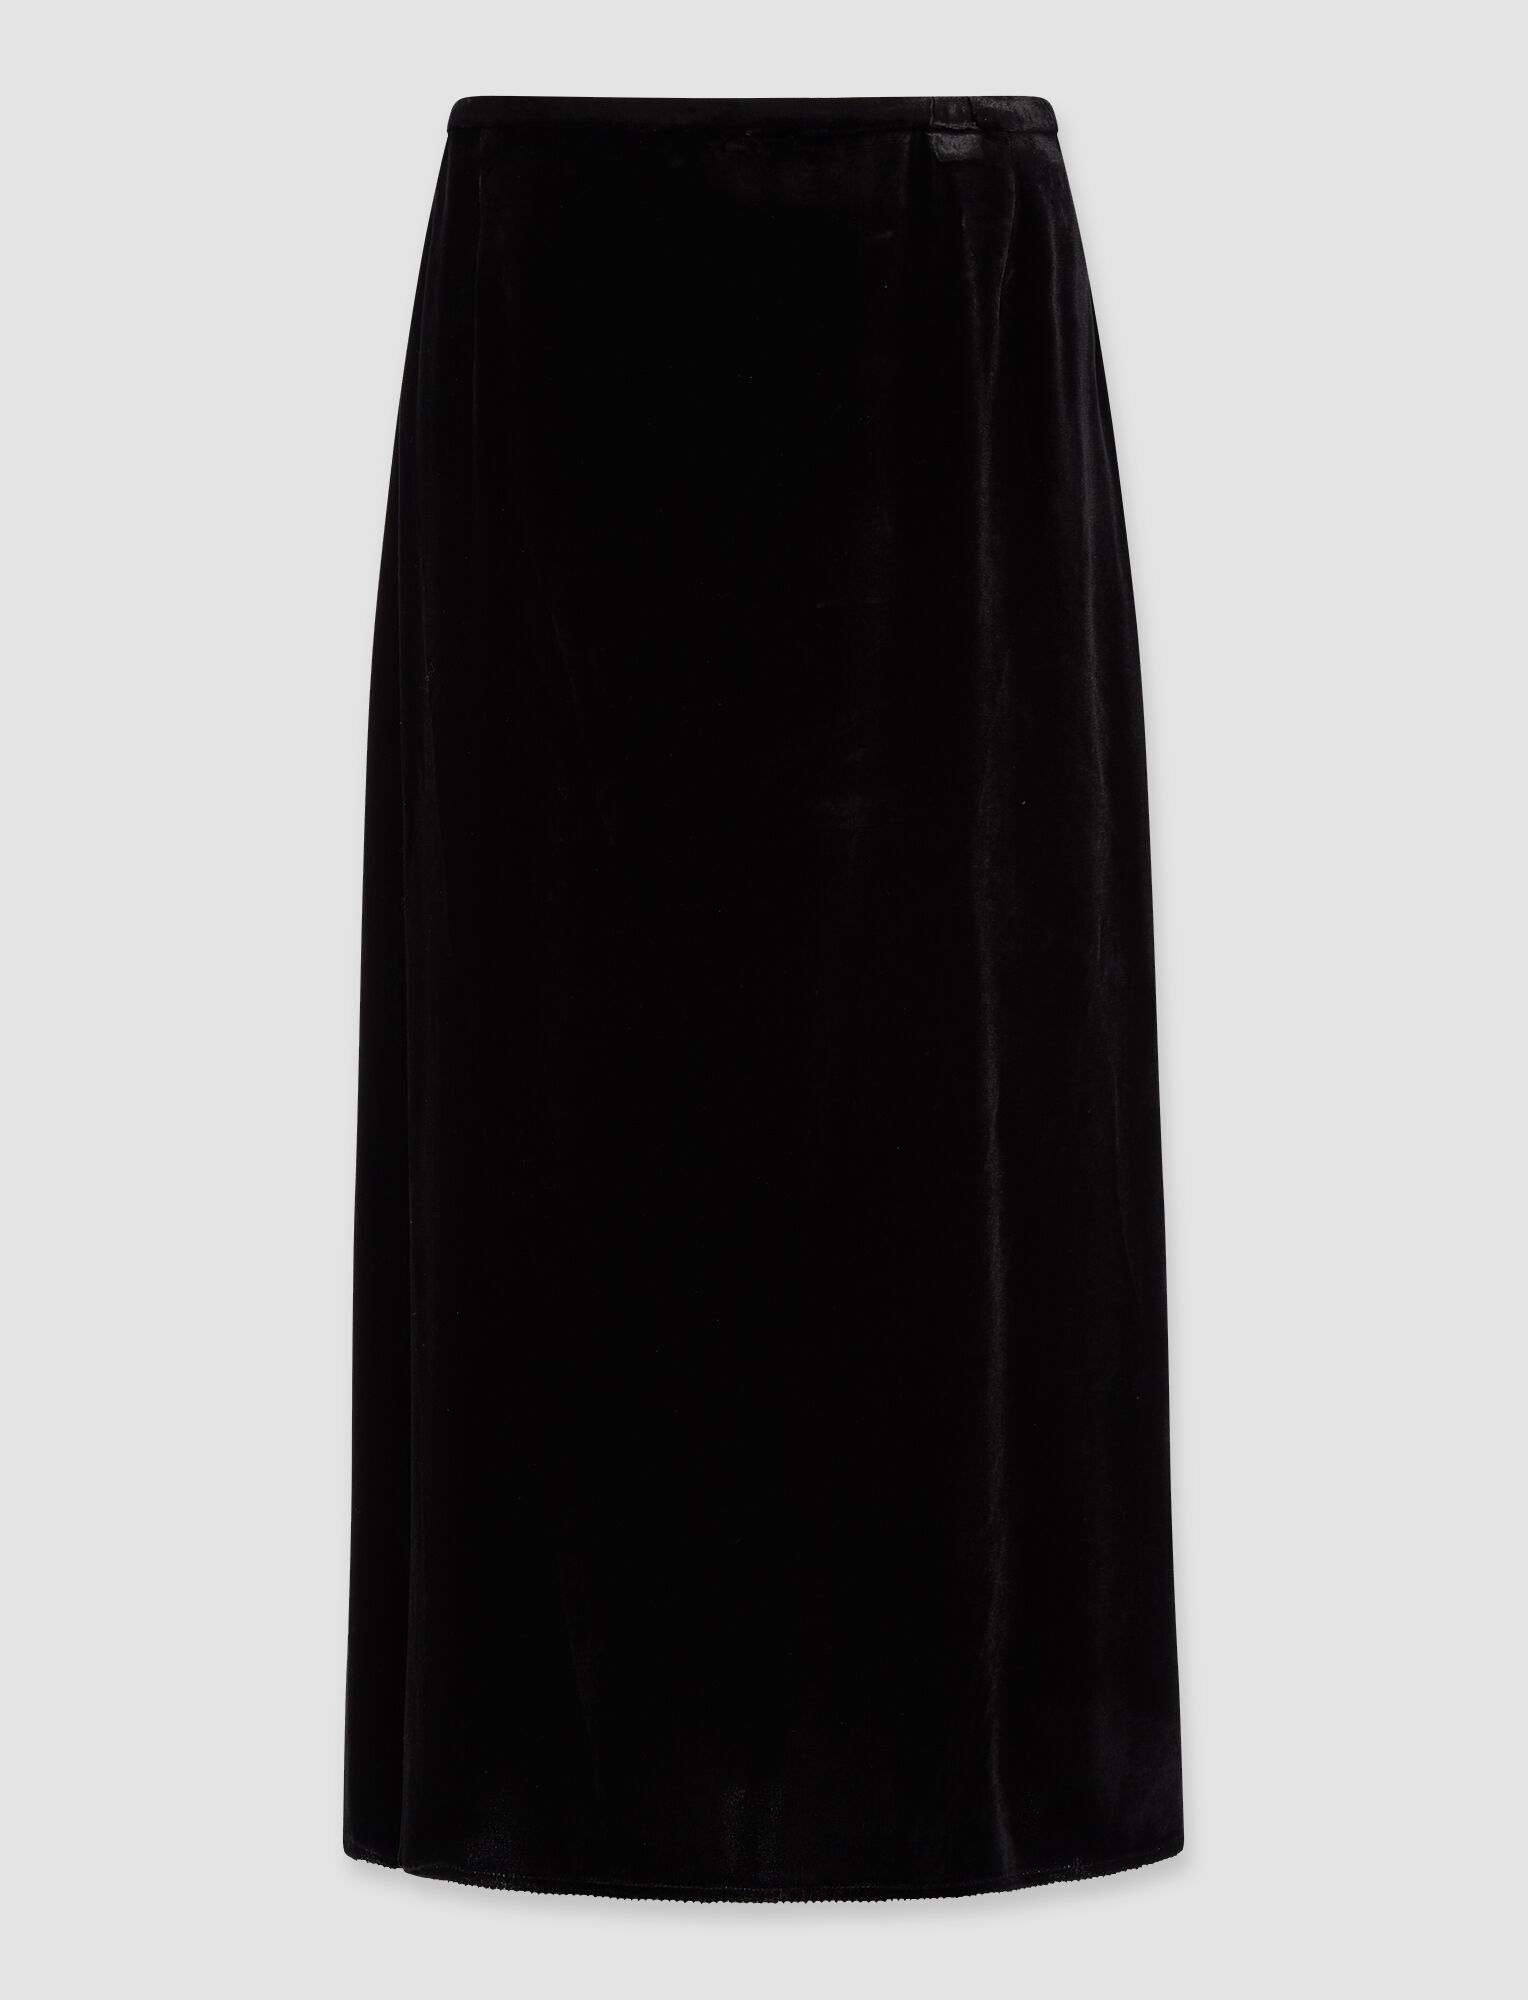 Joseph, Drapy Velvet Sabra Skirt, in Black